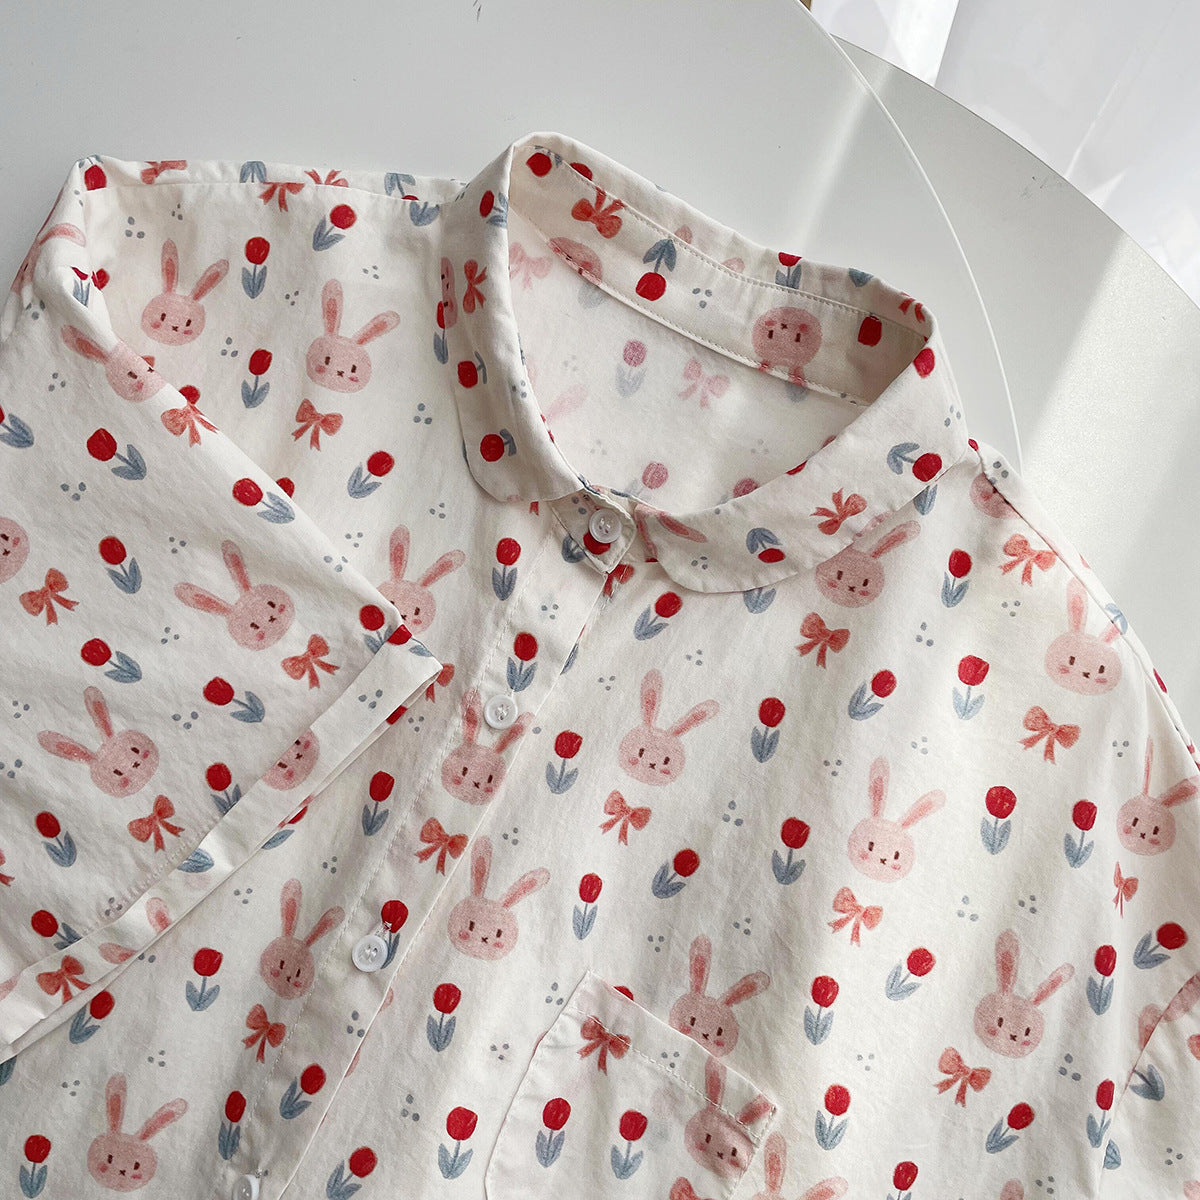 Camicia stampata con coniglio Kawaii da donna